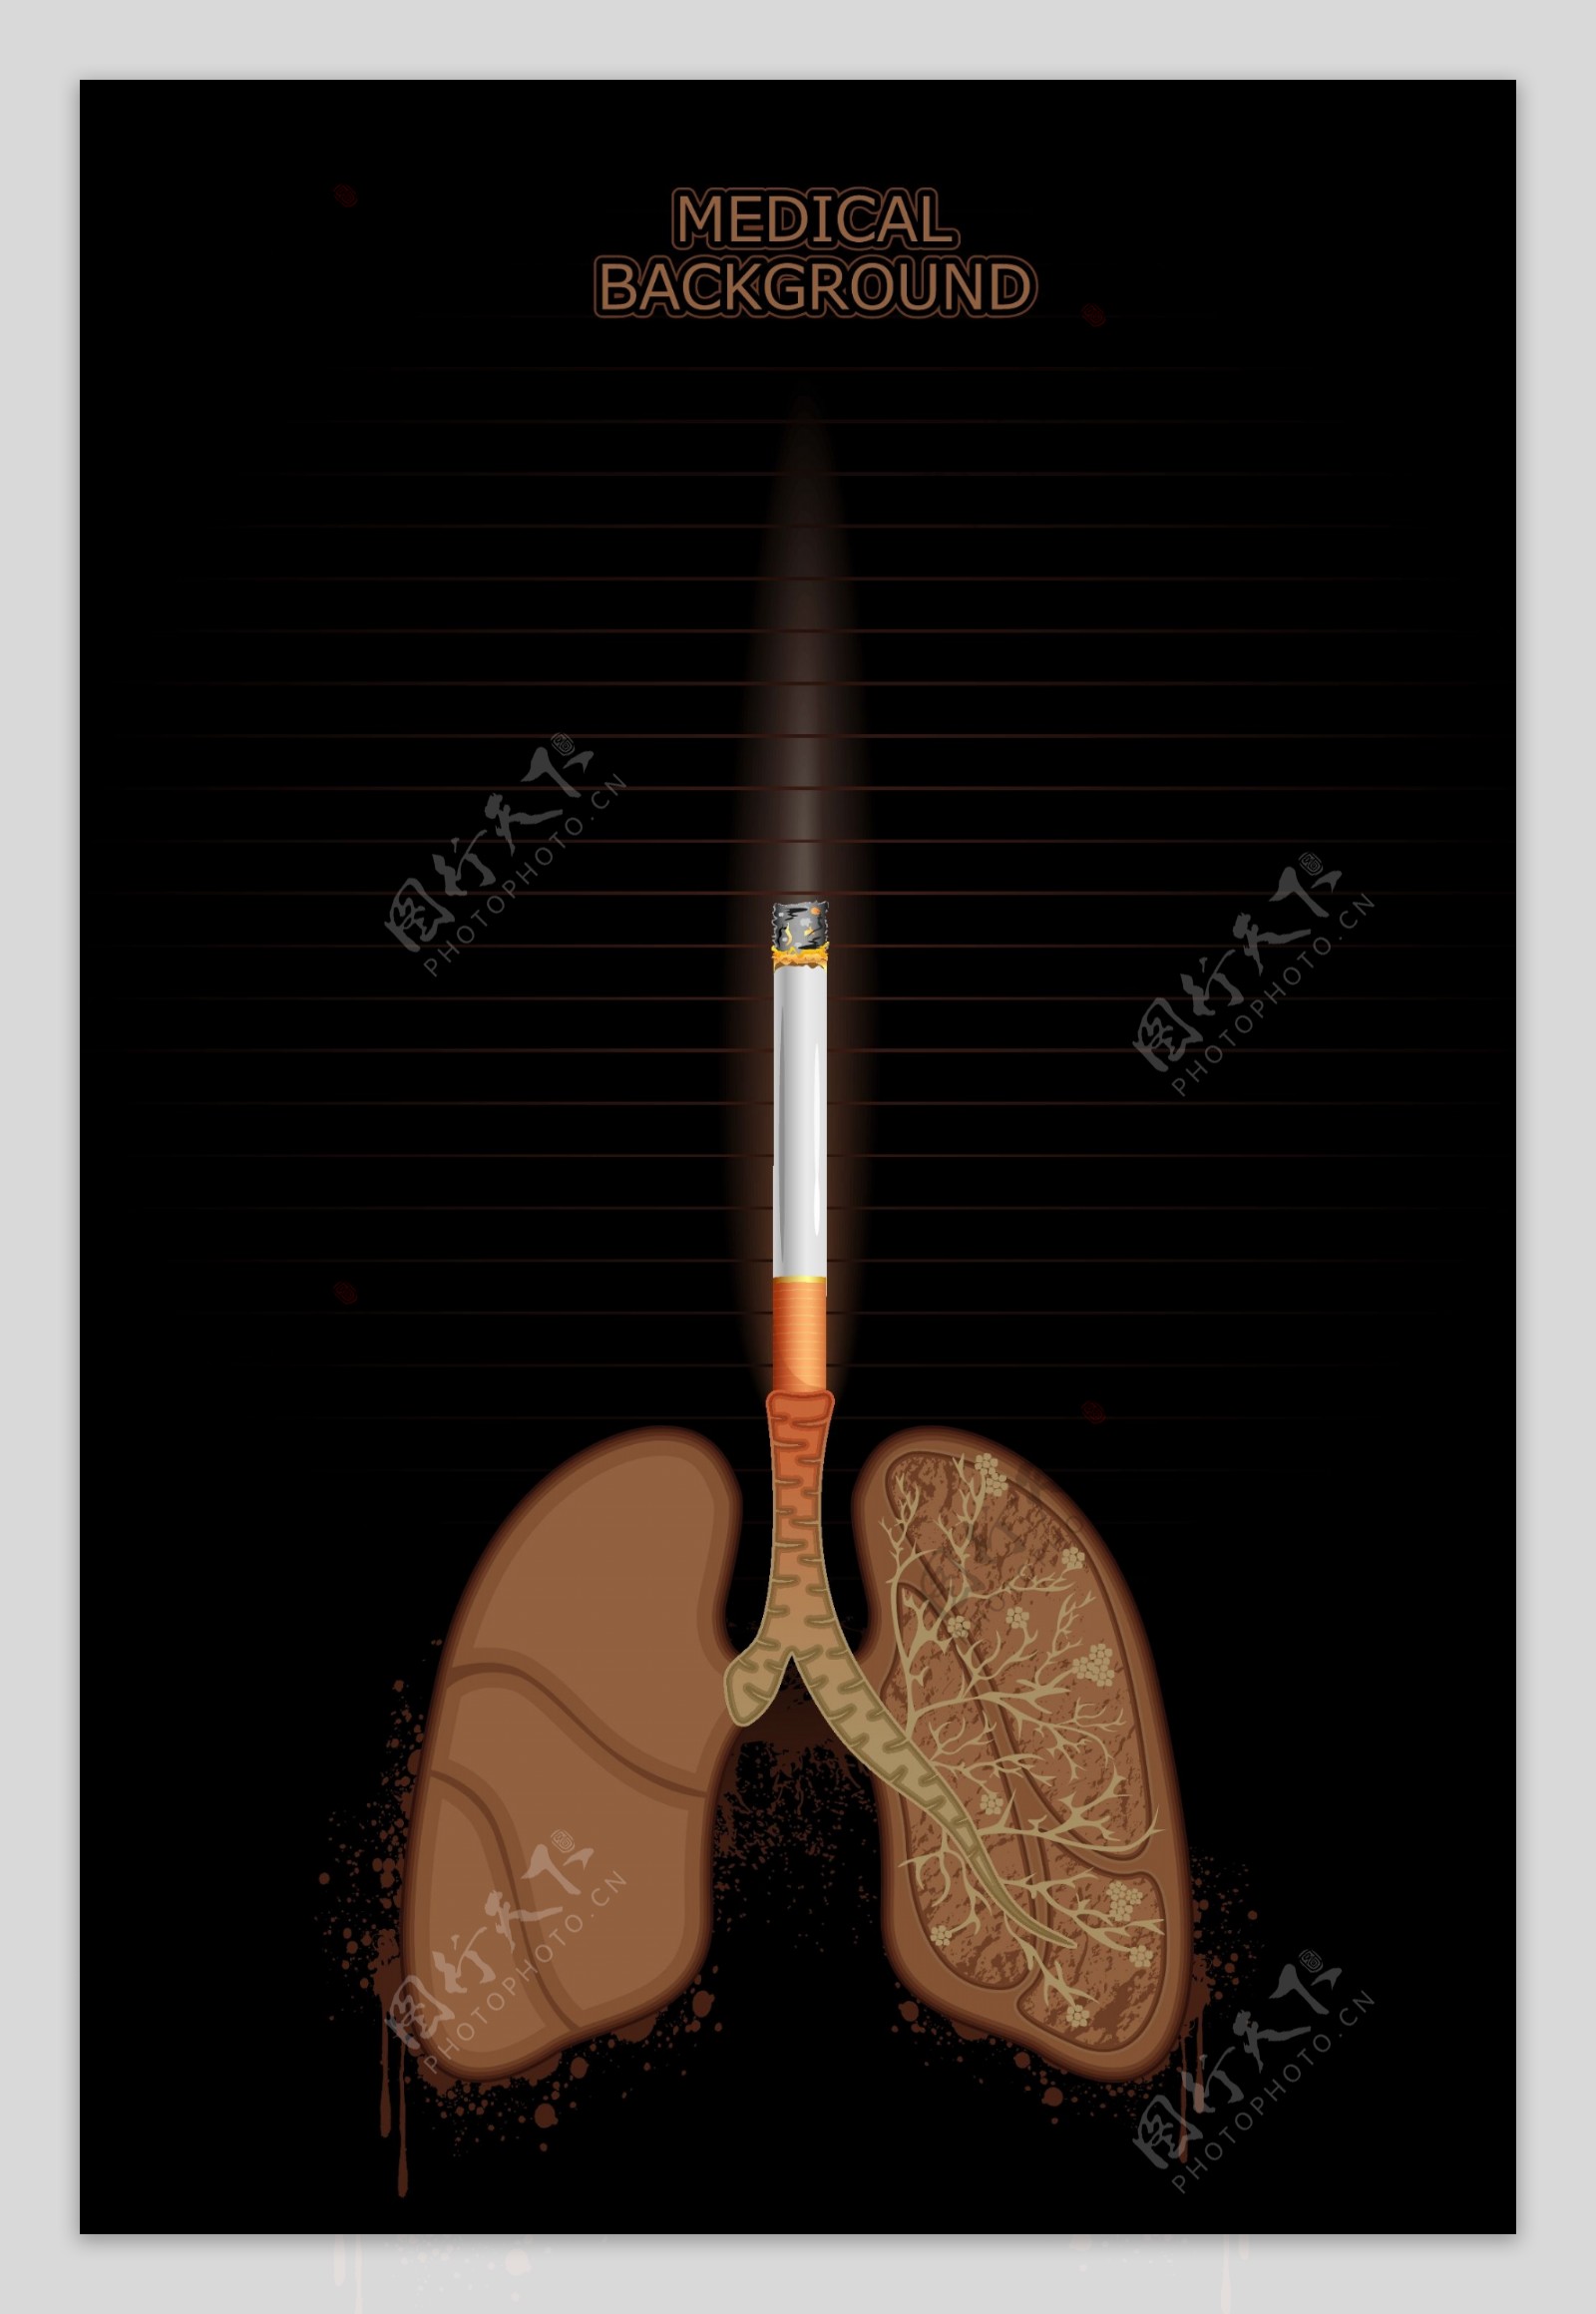 吸煙危害肺部健康醫護海報矢量圖